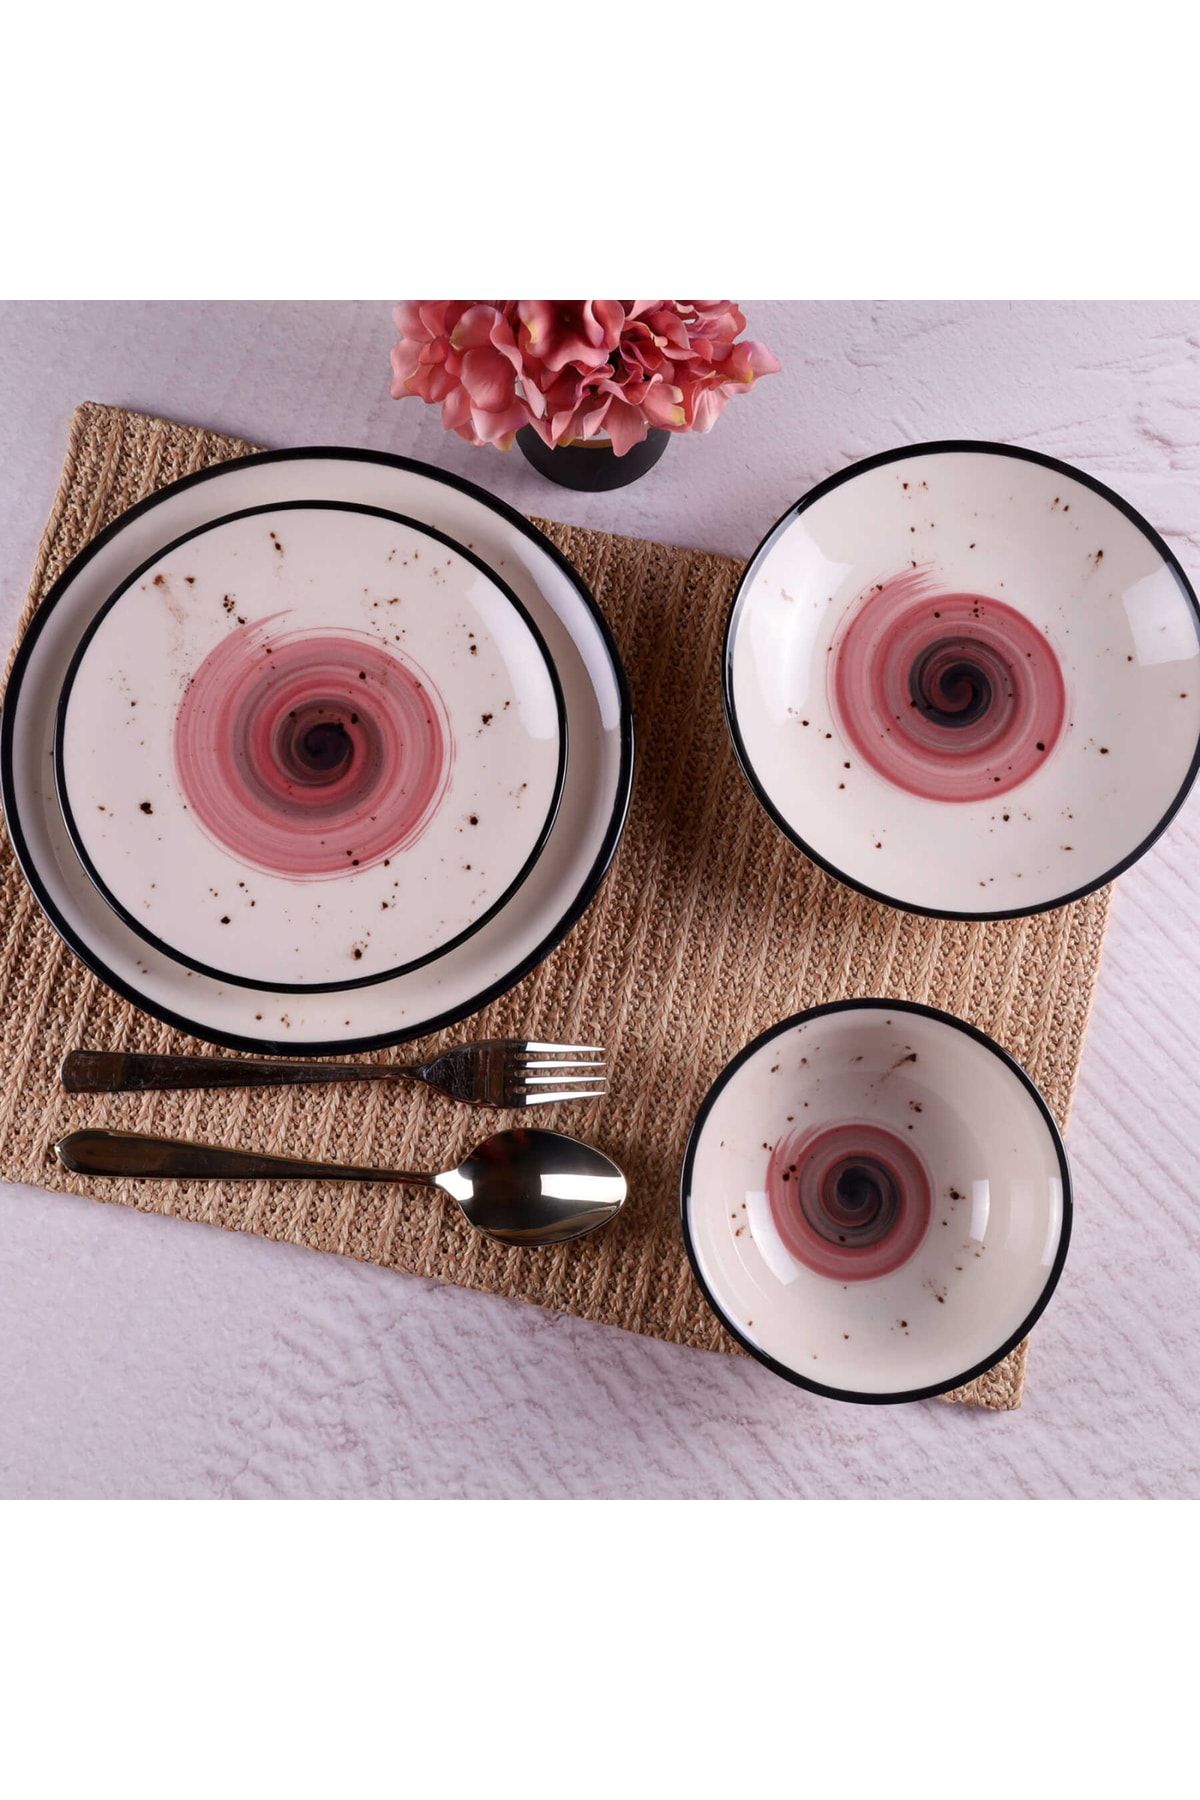 Tulü Porselen Galaxy Mürdüm Siyah Özel Tasarım 6 Kişilik 24 Parça Günlük Modern Yemek Takımı